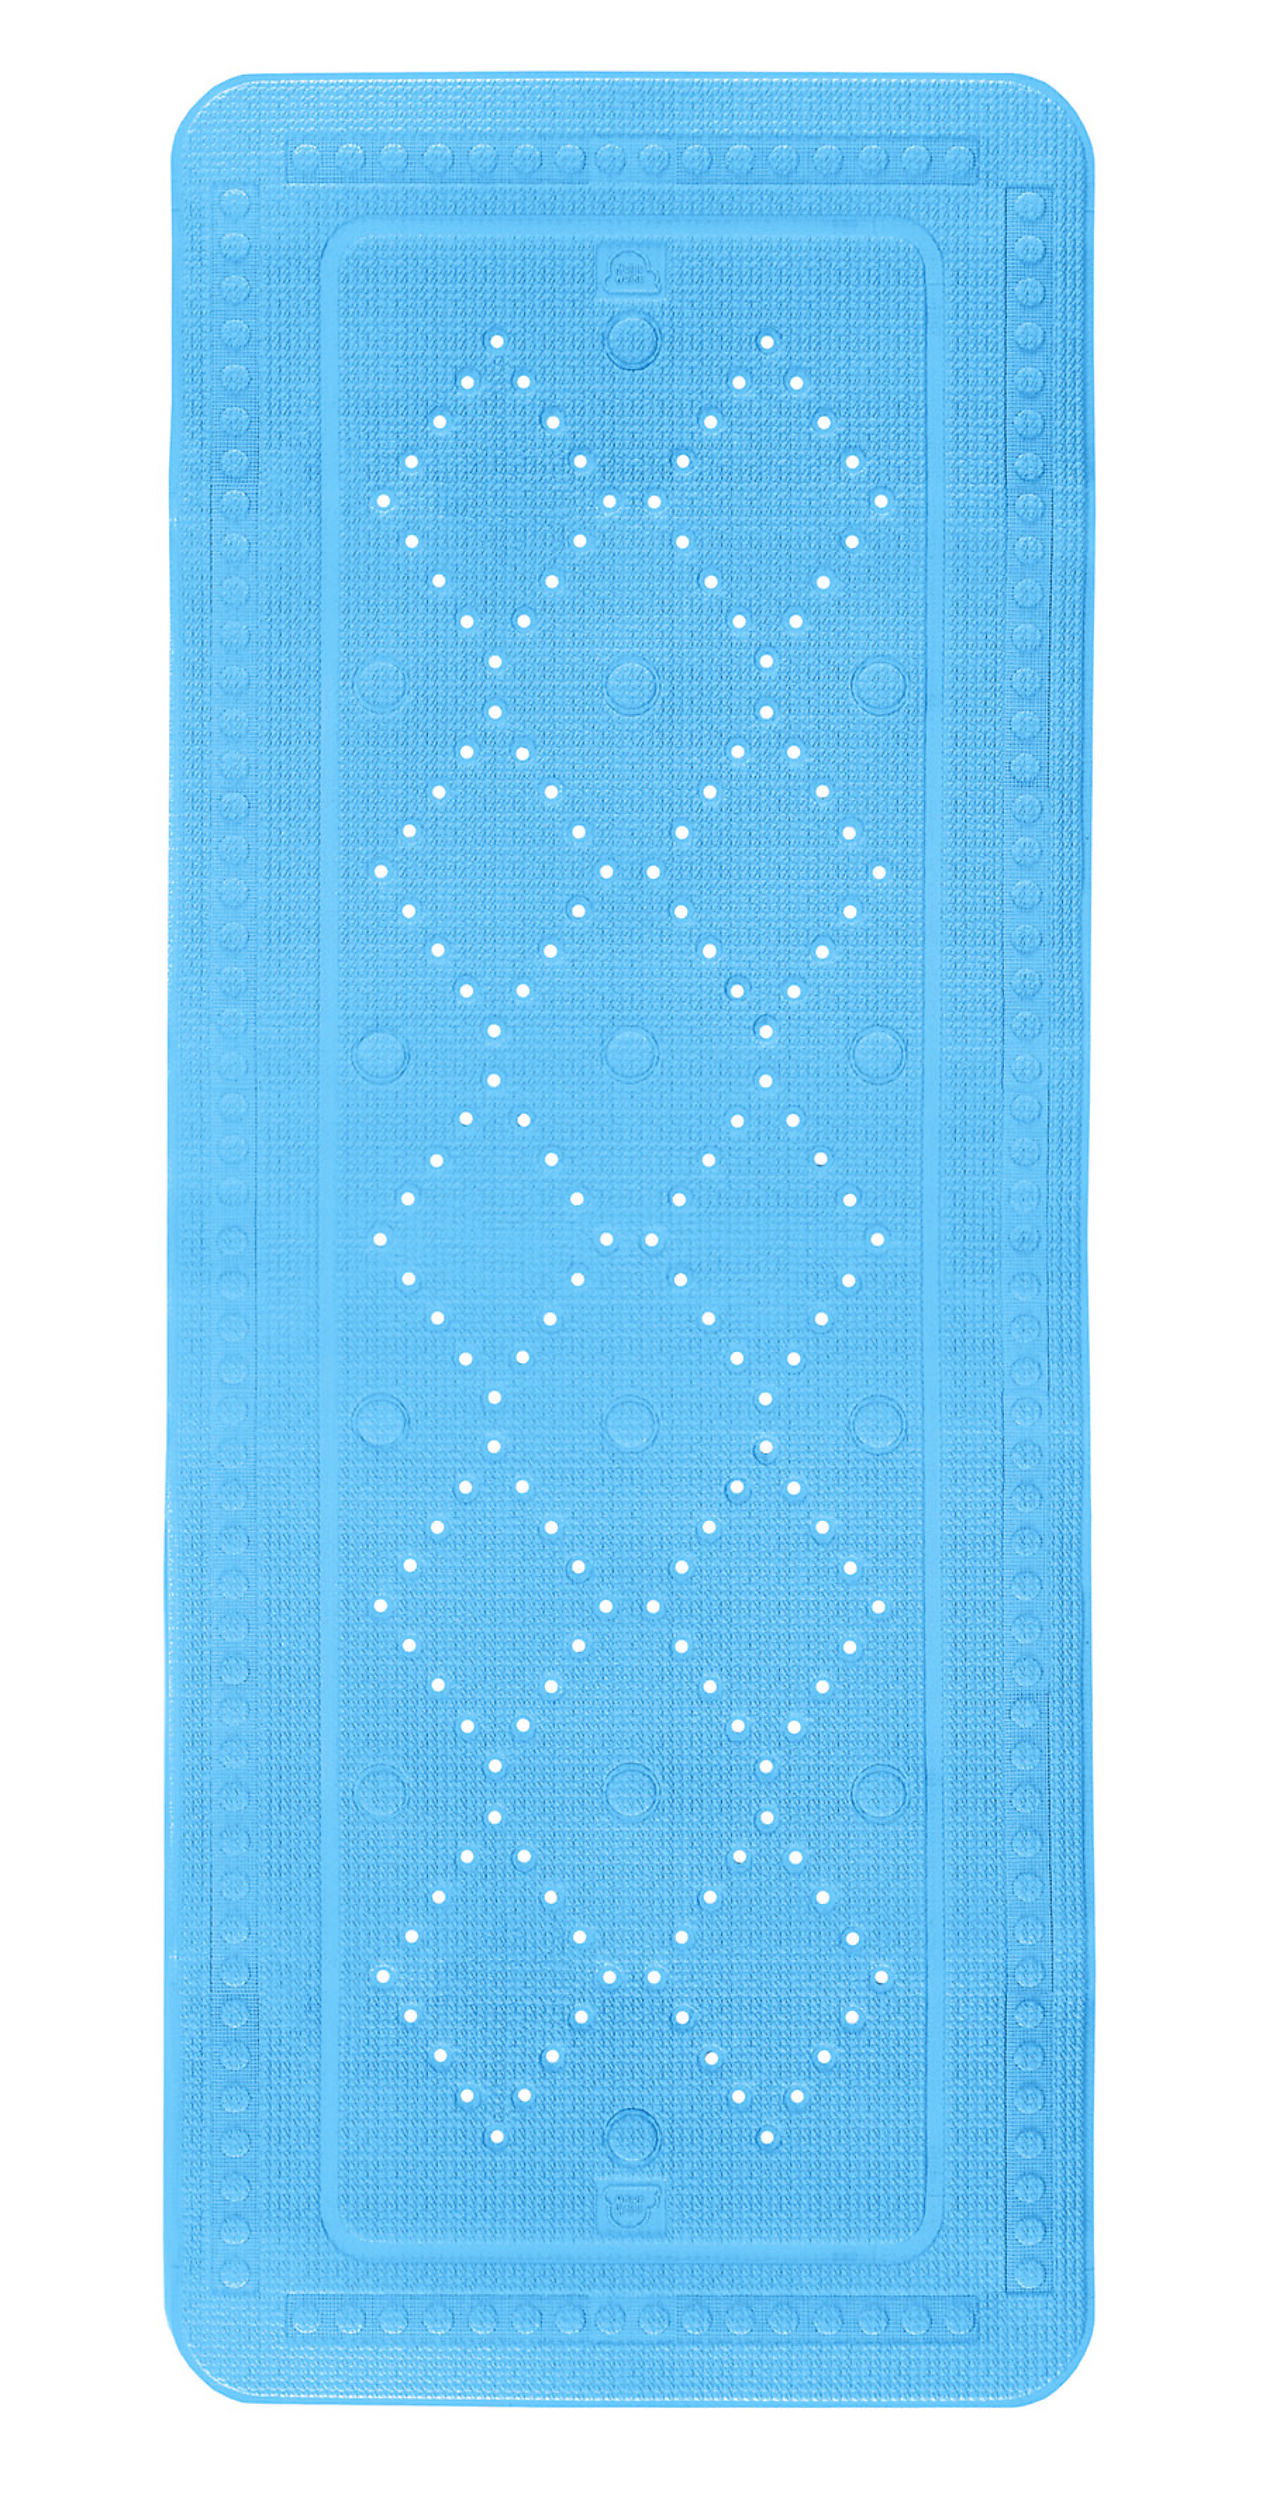 Antisklimatte arosa blå dusj 55x55 cm med sugekopper 1